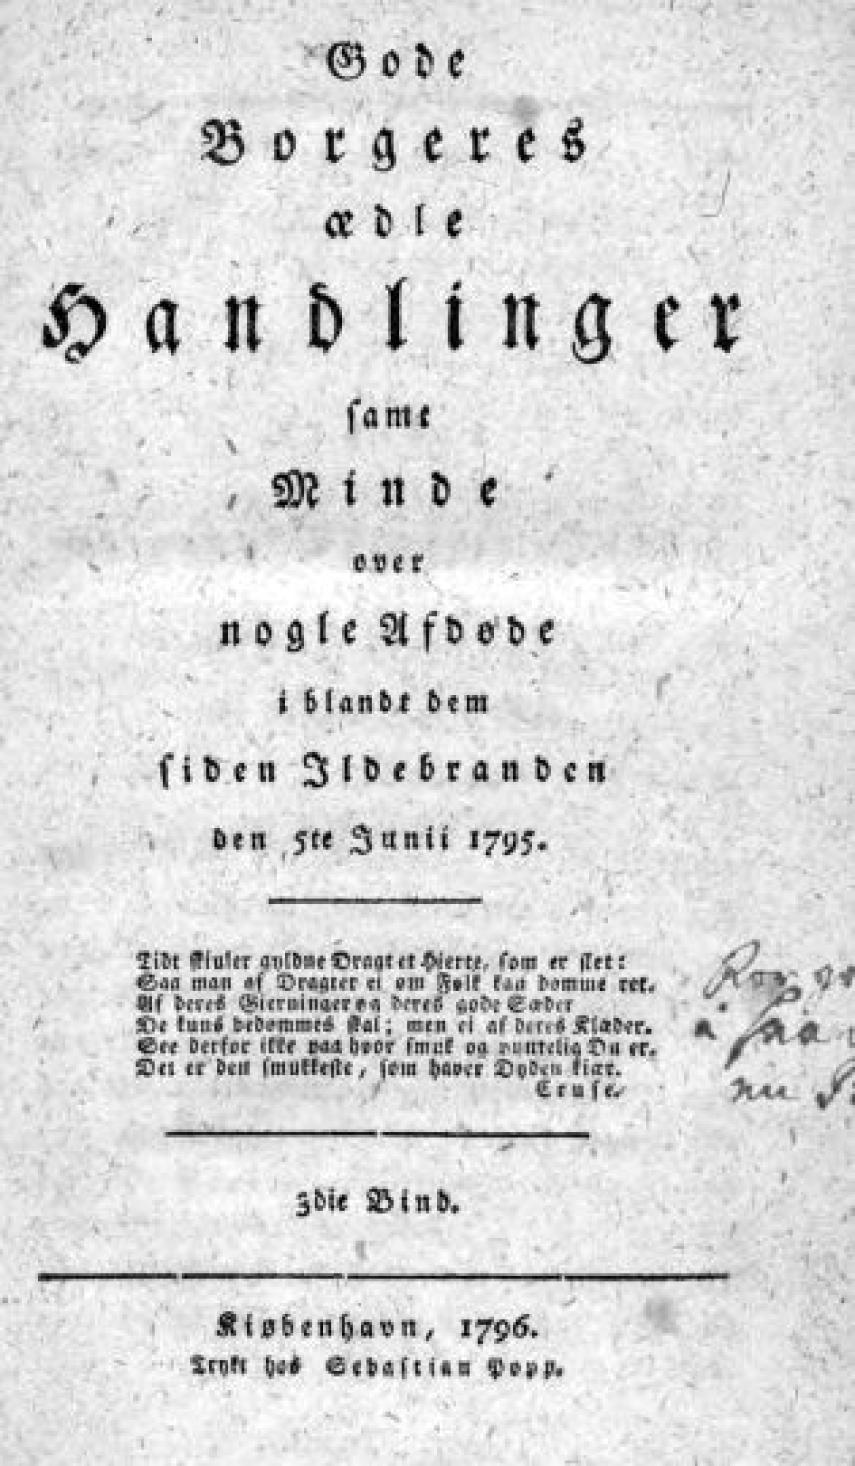 G. H. Lund: Gode Borgeres ædle Handlinger : i anledning af Ildebranden 5te Junii 1795 i Kiøbenhavn. 3. bind